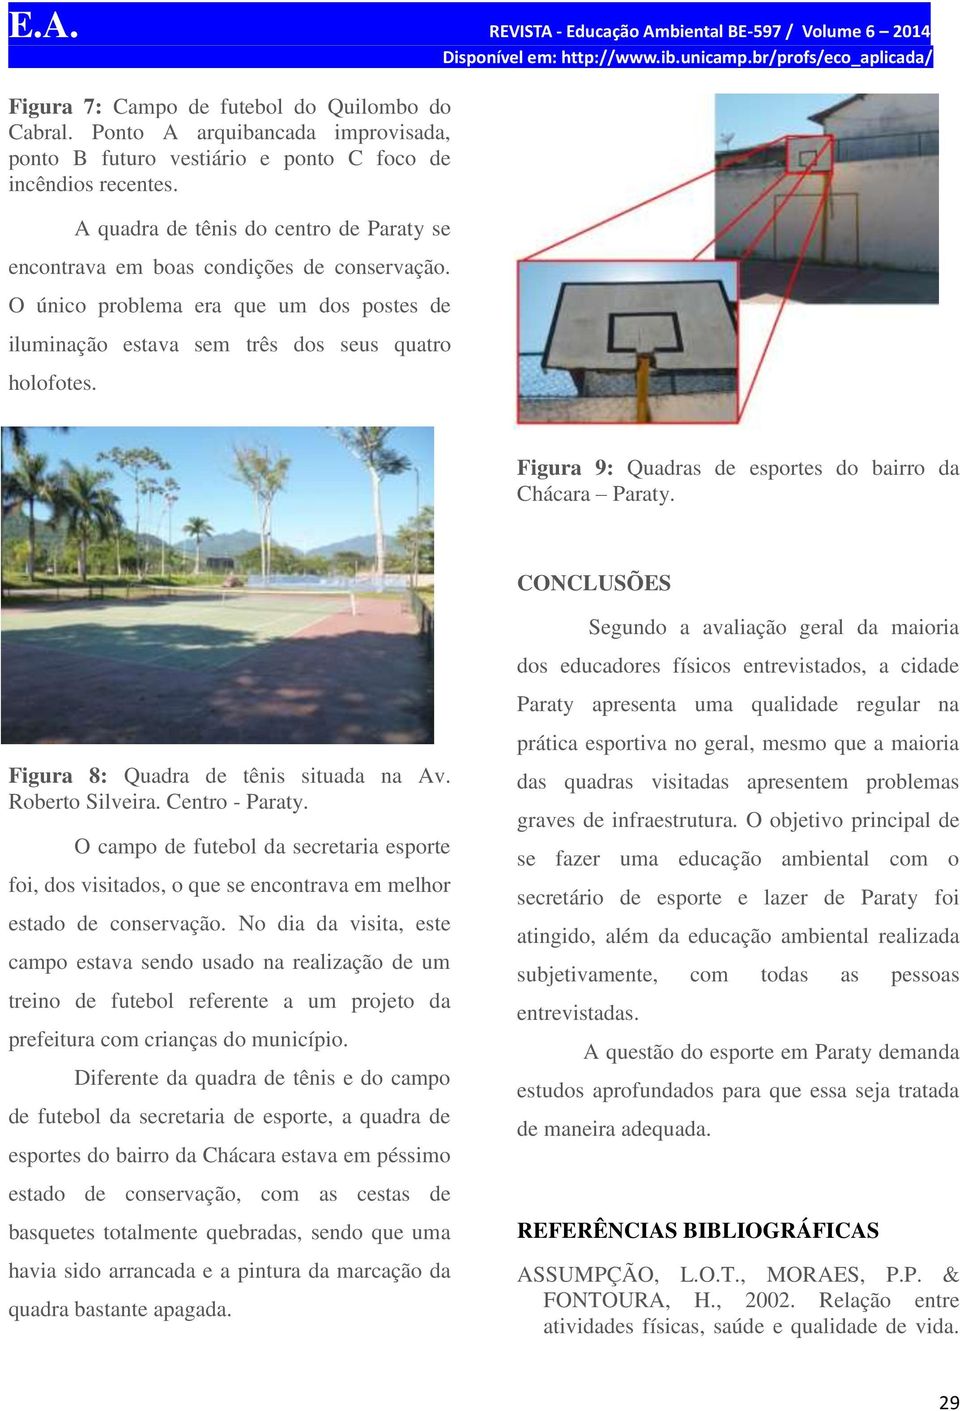 Figura 9: Quadras de esportes do bairro da Chácara Paraty. CONCLUSÕES Figura 8: Quadra de tênis situada na Av. Roberto Silveira. Centro - Paraty.